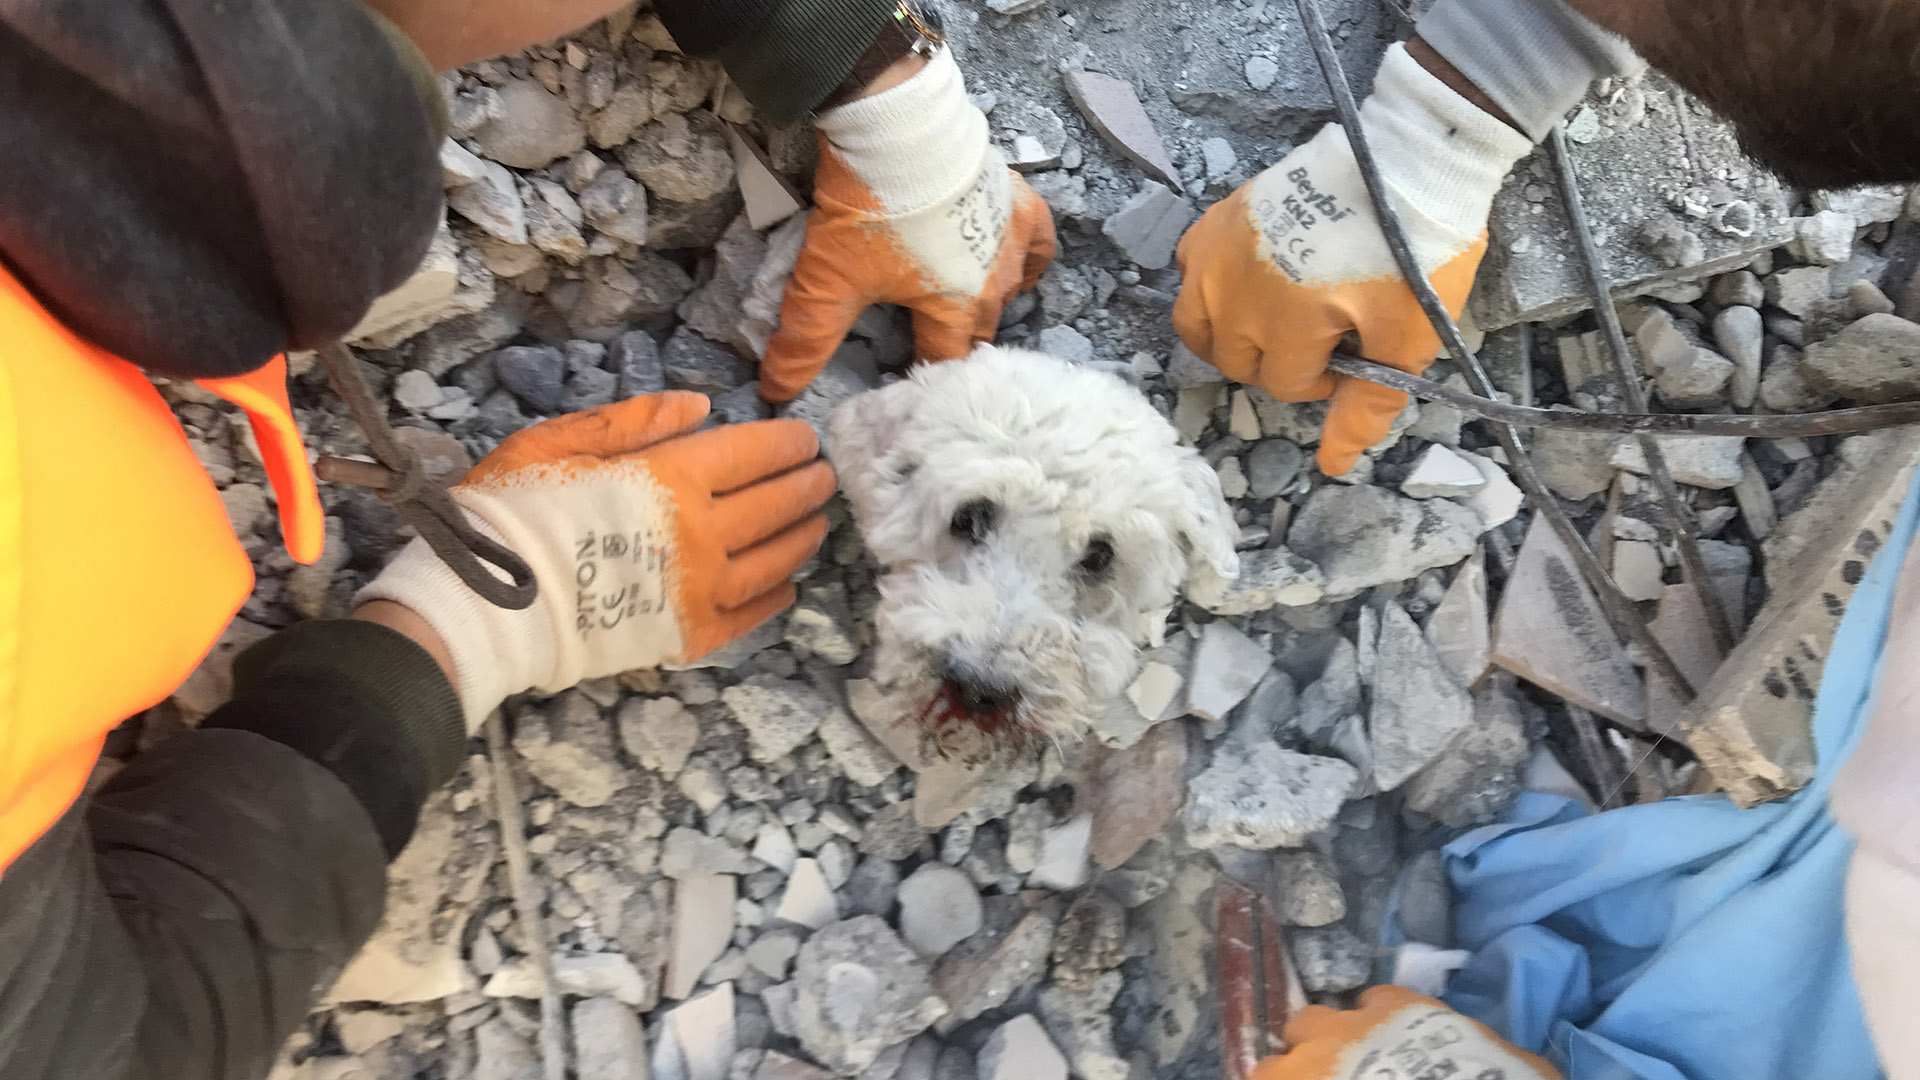 Los rescatistas extraen a un perro llamado Pamuk de los escombros de un edificio derrumbado en Hatay, tres días después de un terremoto masivo (Foto de Gurkan OZTURK / AFP)